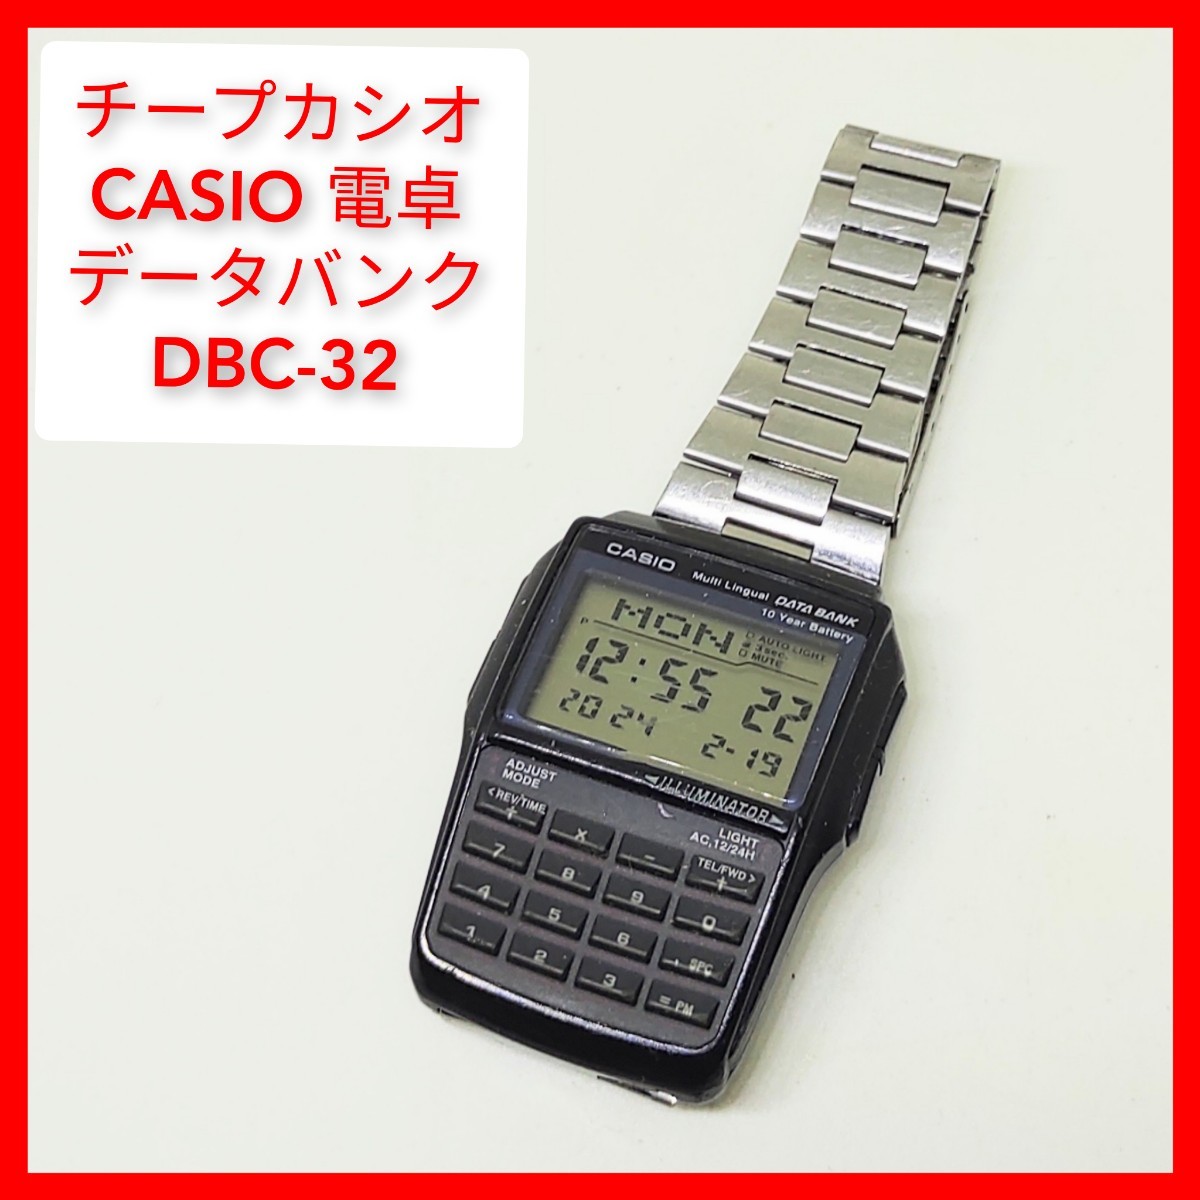 カシオ DBC-32 テレバンク 電卓,電話帳 チープカシオ CASIO